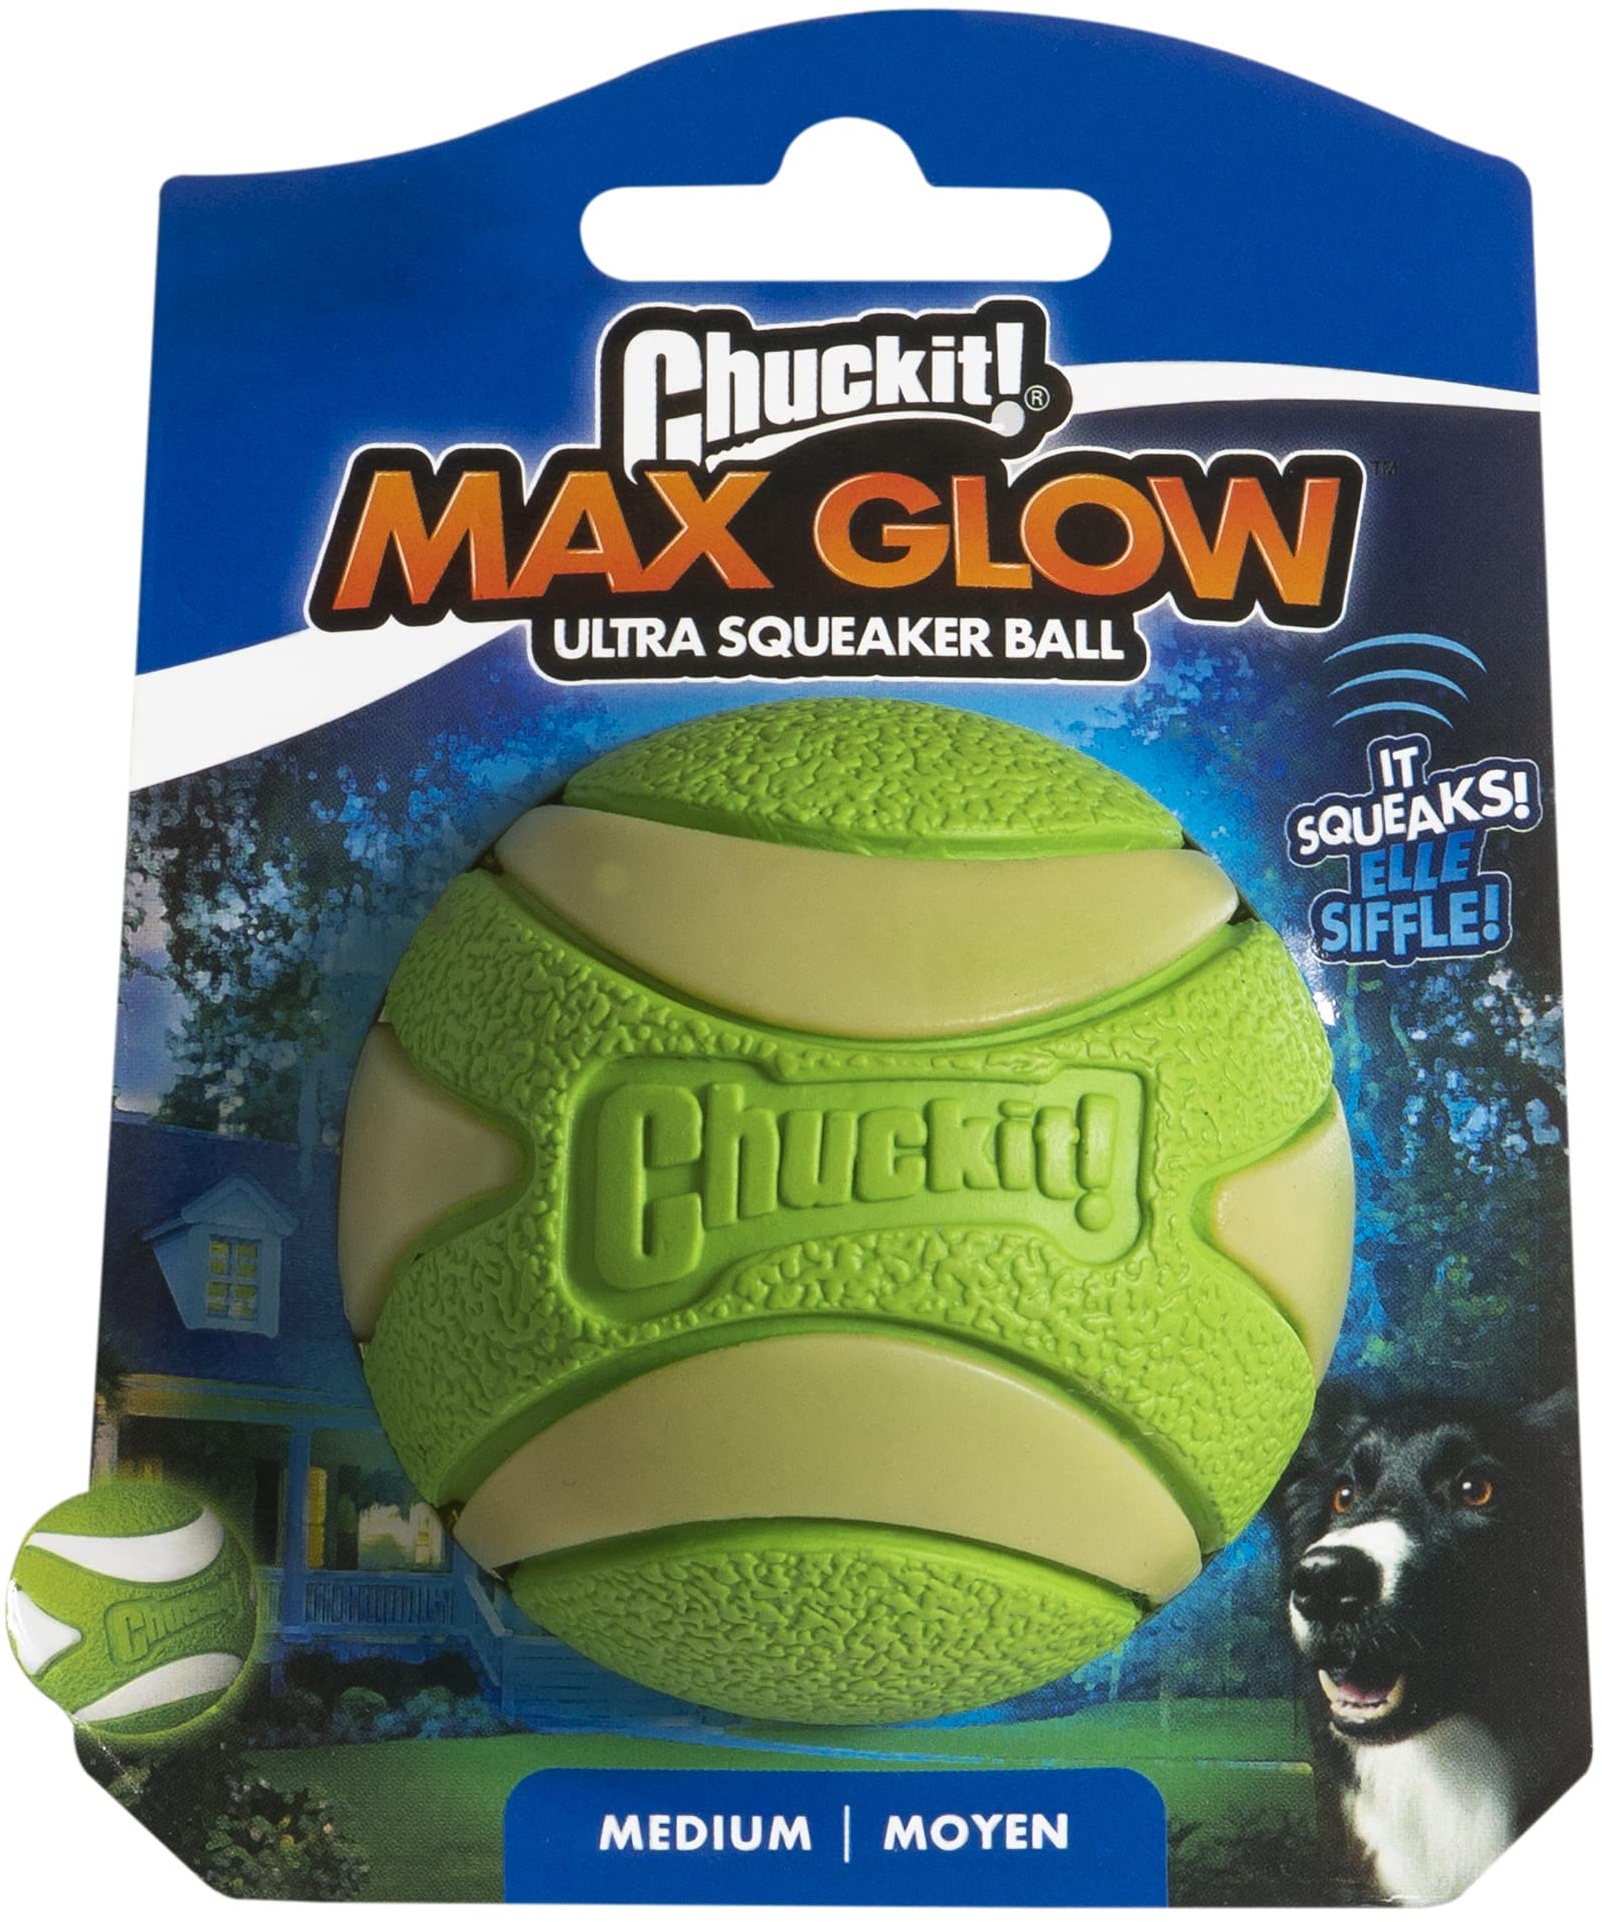 Chuckit! Max Glow Ultra Quietschball Hundespielzeug, langlebig, hohe Sprungkraft, schwimmender Gummi, quietschender Hundeball, wiederaufladbar, leuchtet im Dunkeln, kompatibel mit Launcher-Spielzeug